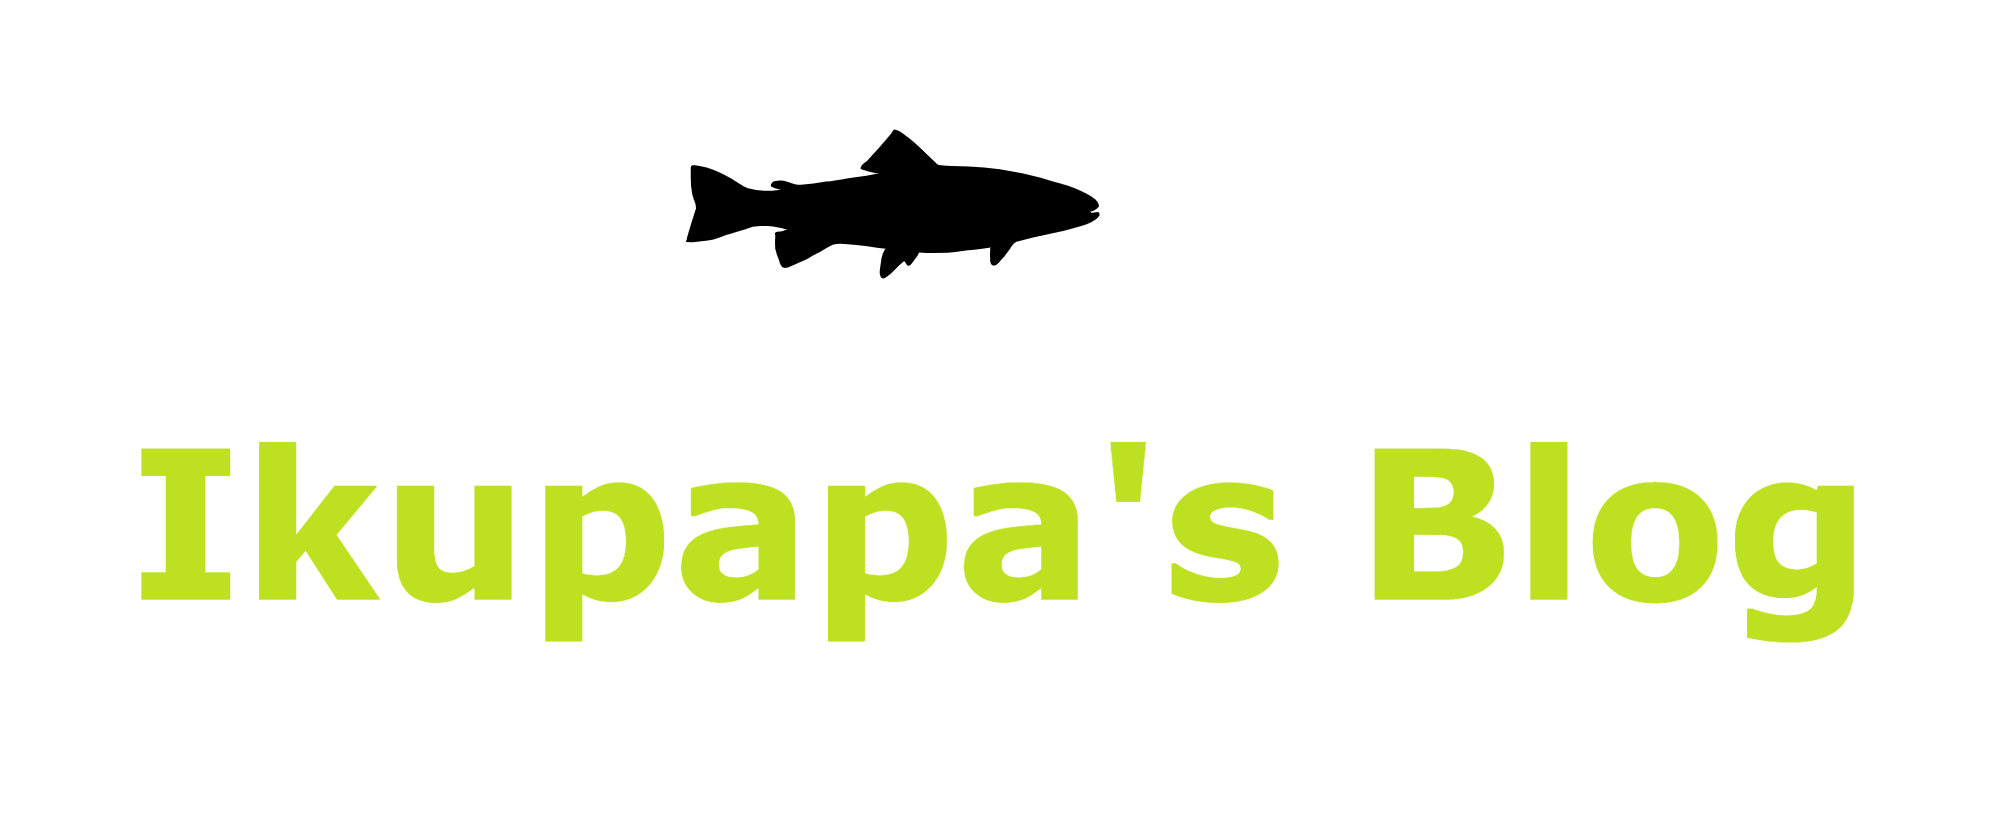 Ikupapa's blog